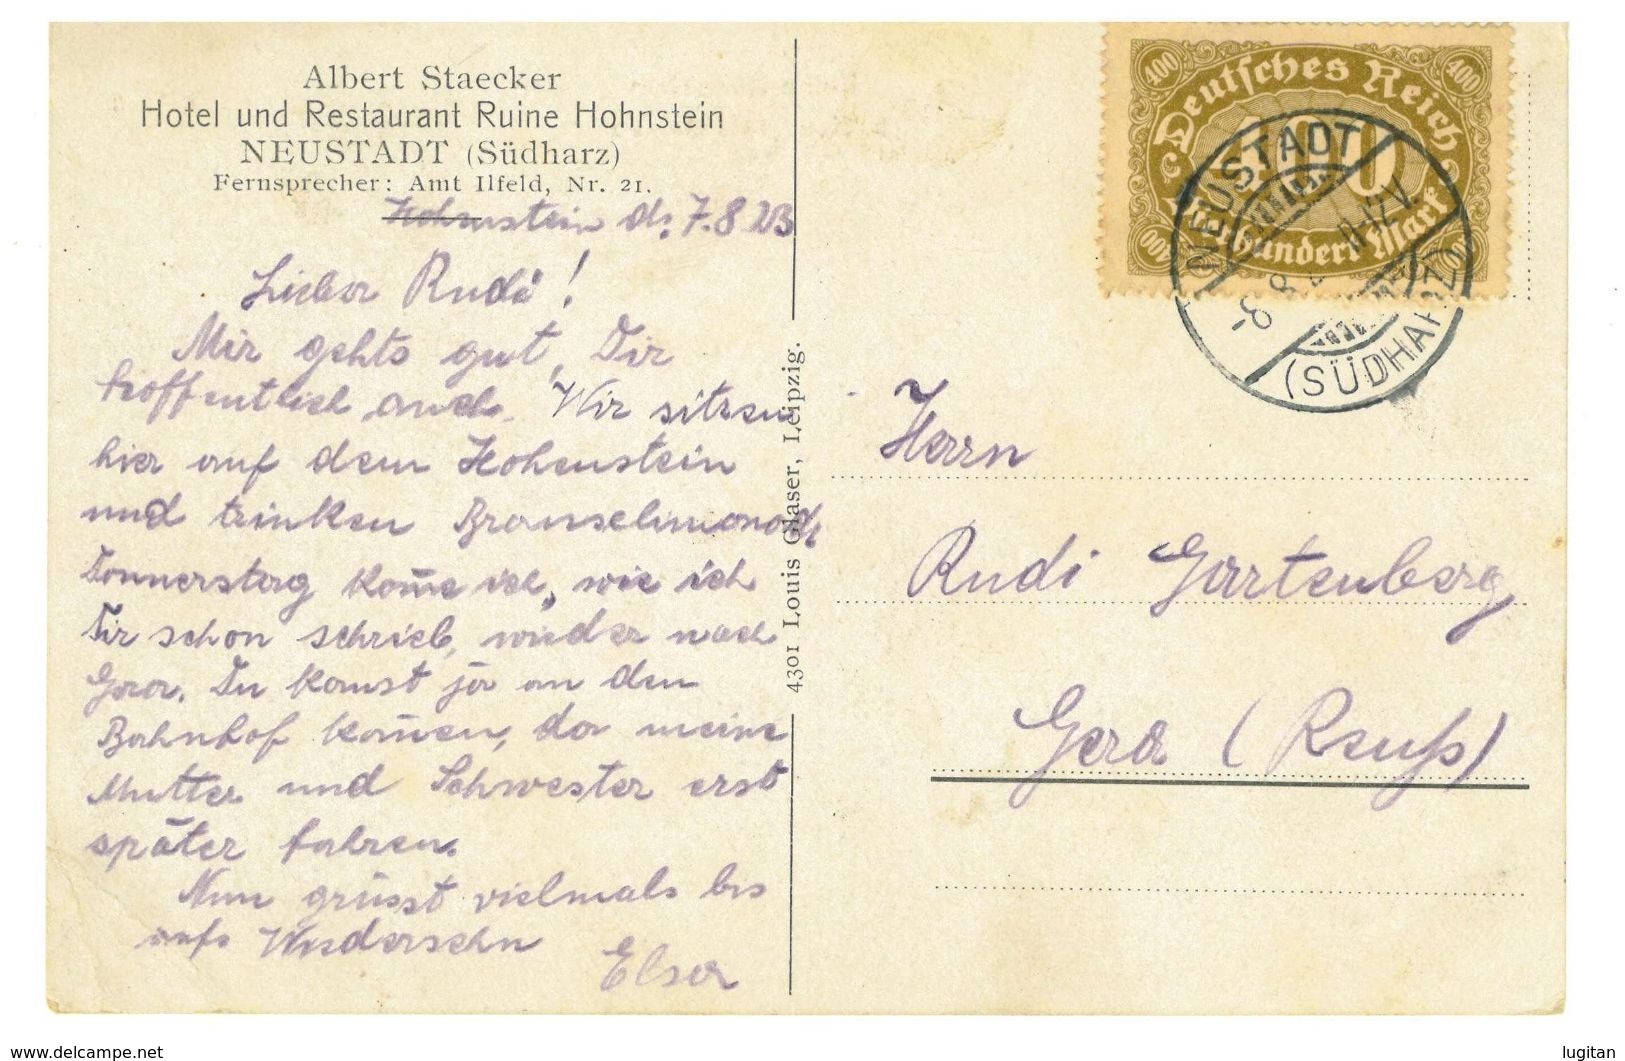 CARTOLINA - GERMANIA RUINE HOHNSTEIN - SASSONIA - ANNO 1923 - ALBERT STAECKER - HOTEL RISTORANTE - Hohenstein-Ernstthal